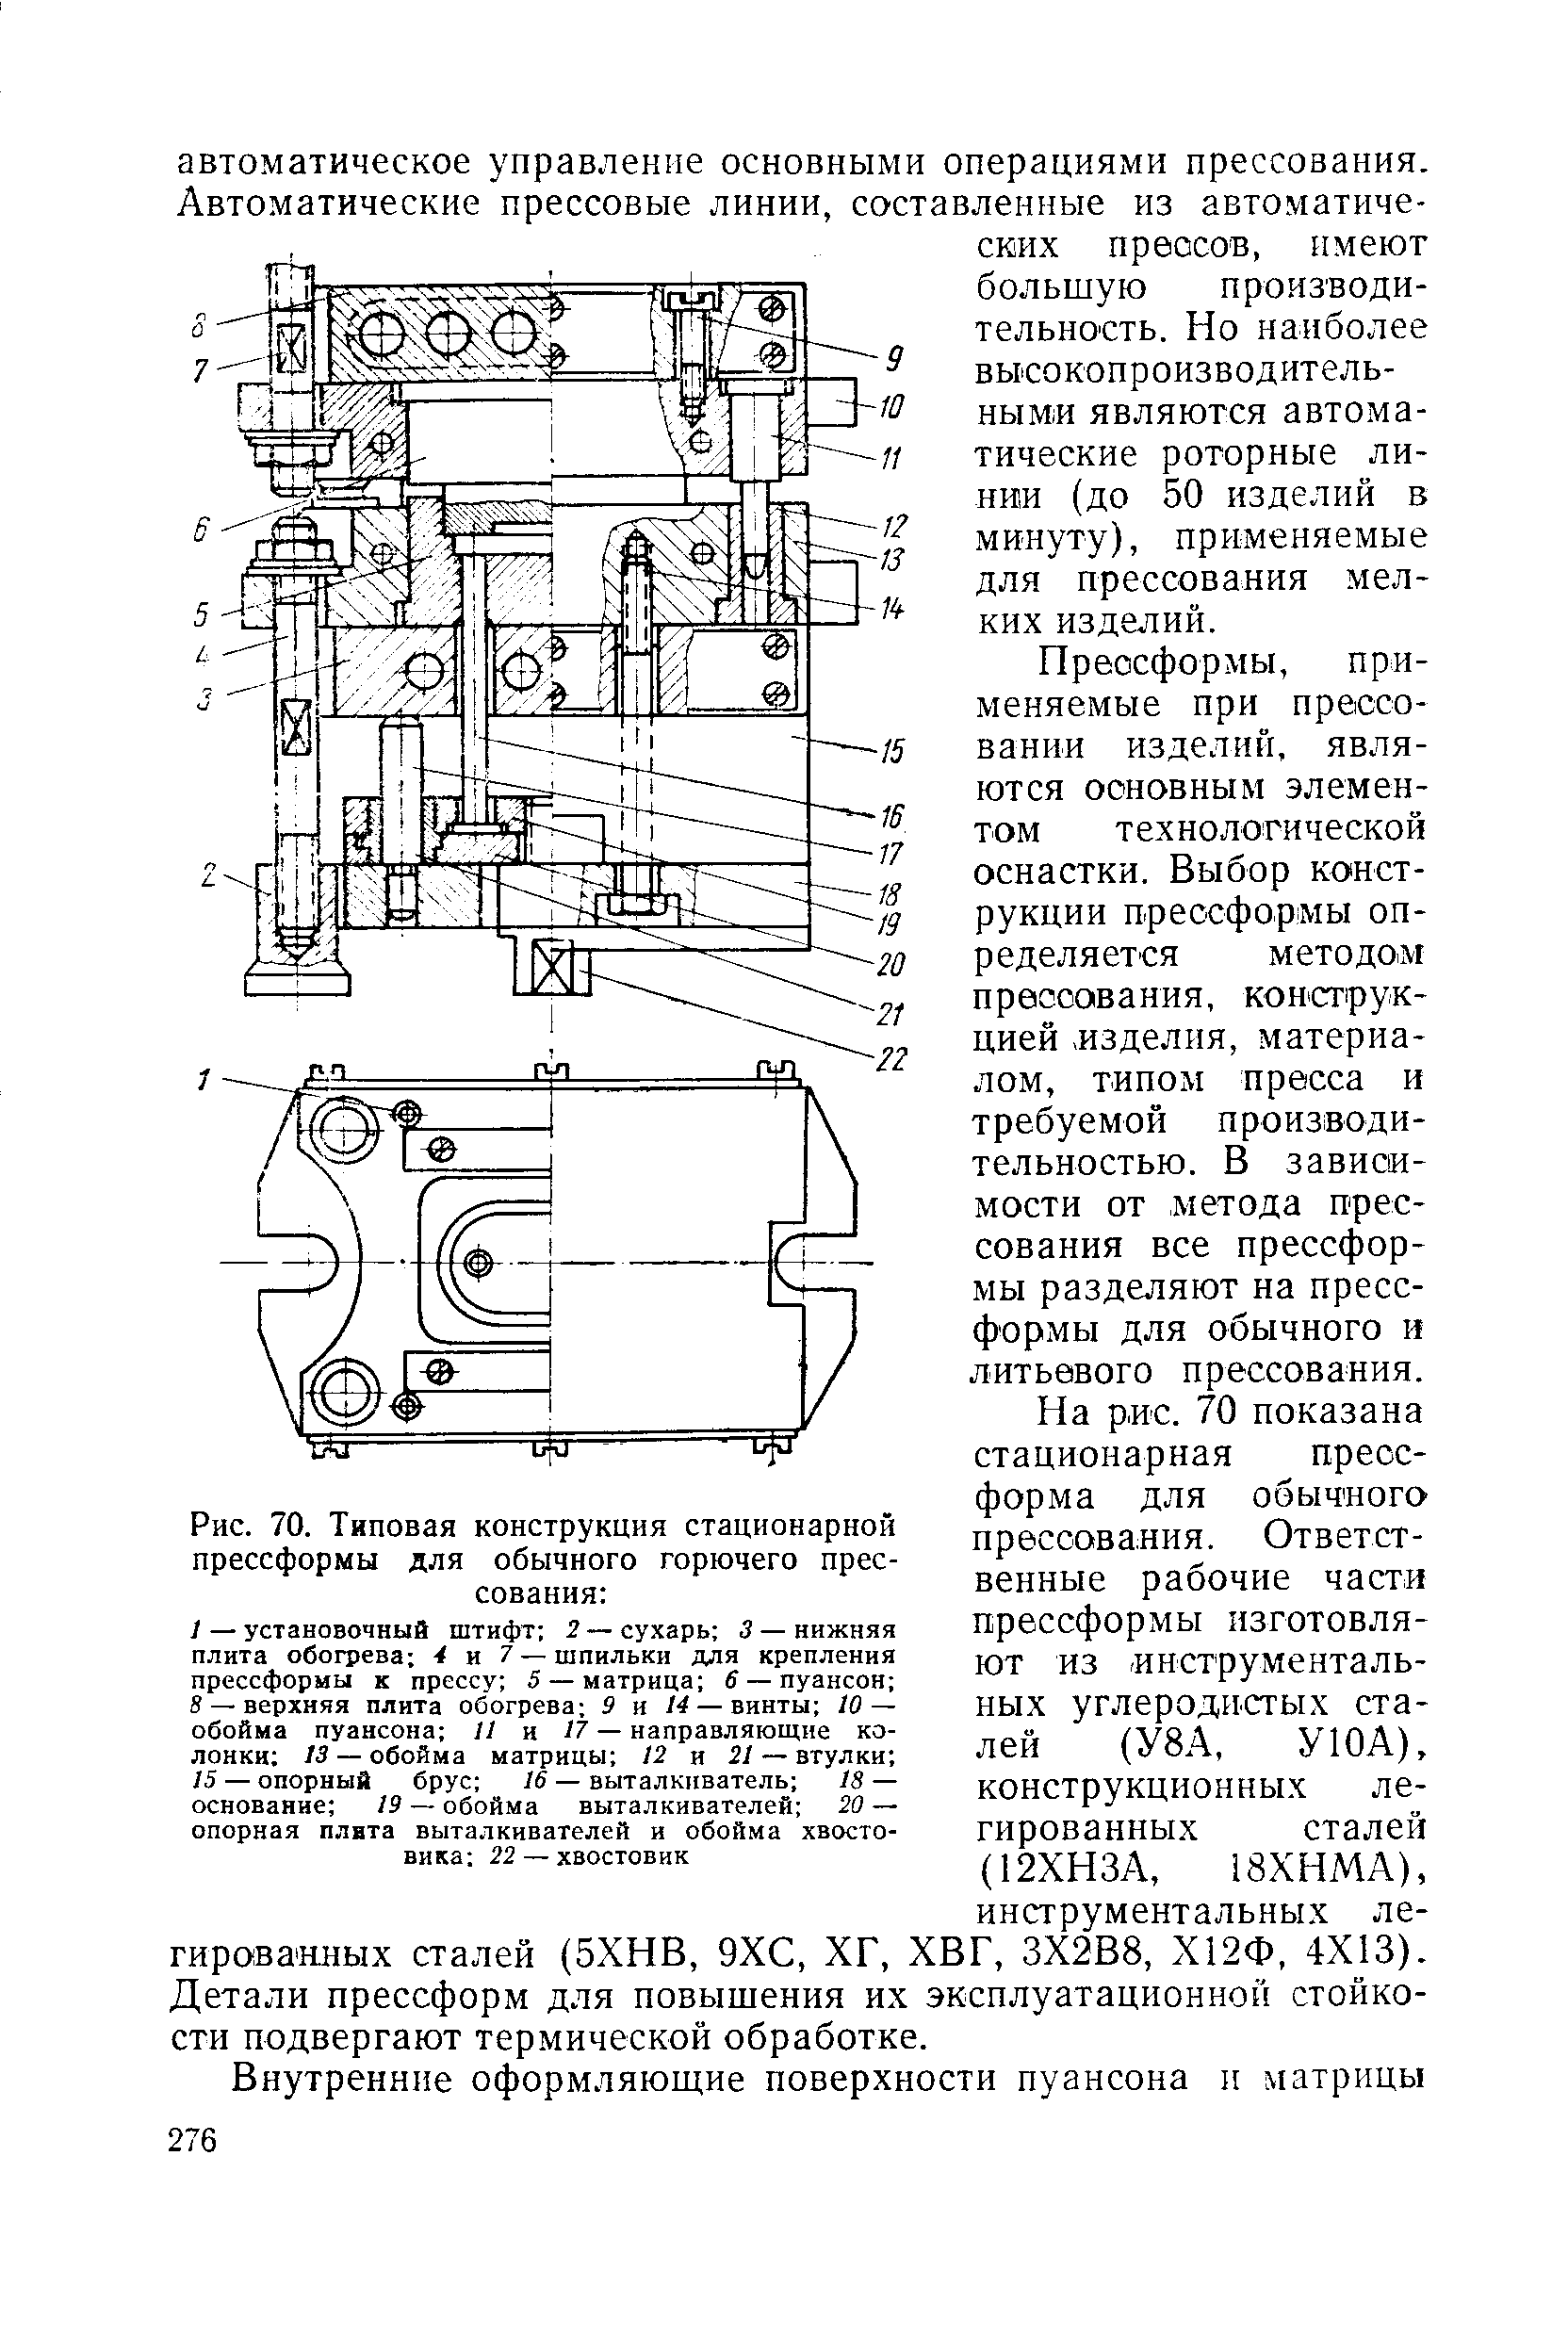 Рис. 70. Типовая конструкция стационарной прессформы для обычного горючего прессования 
